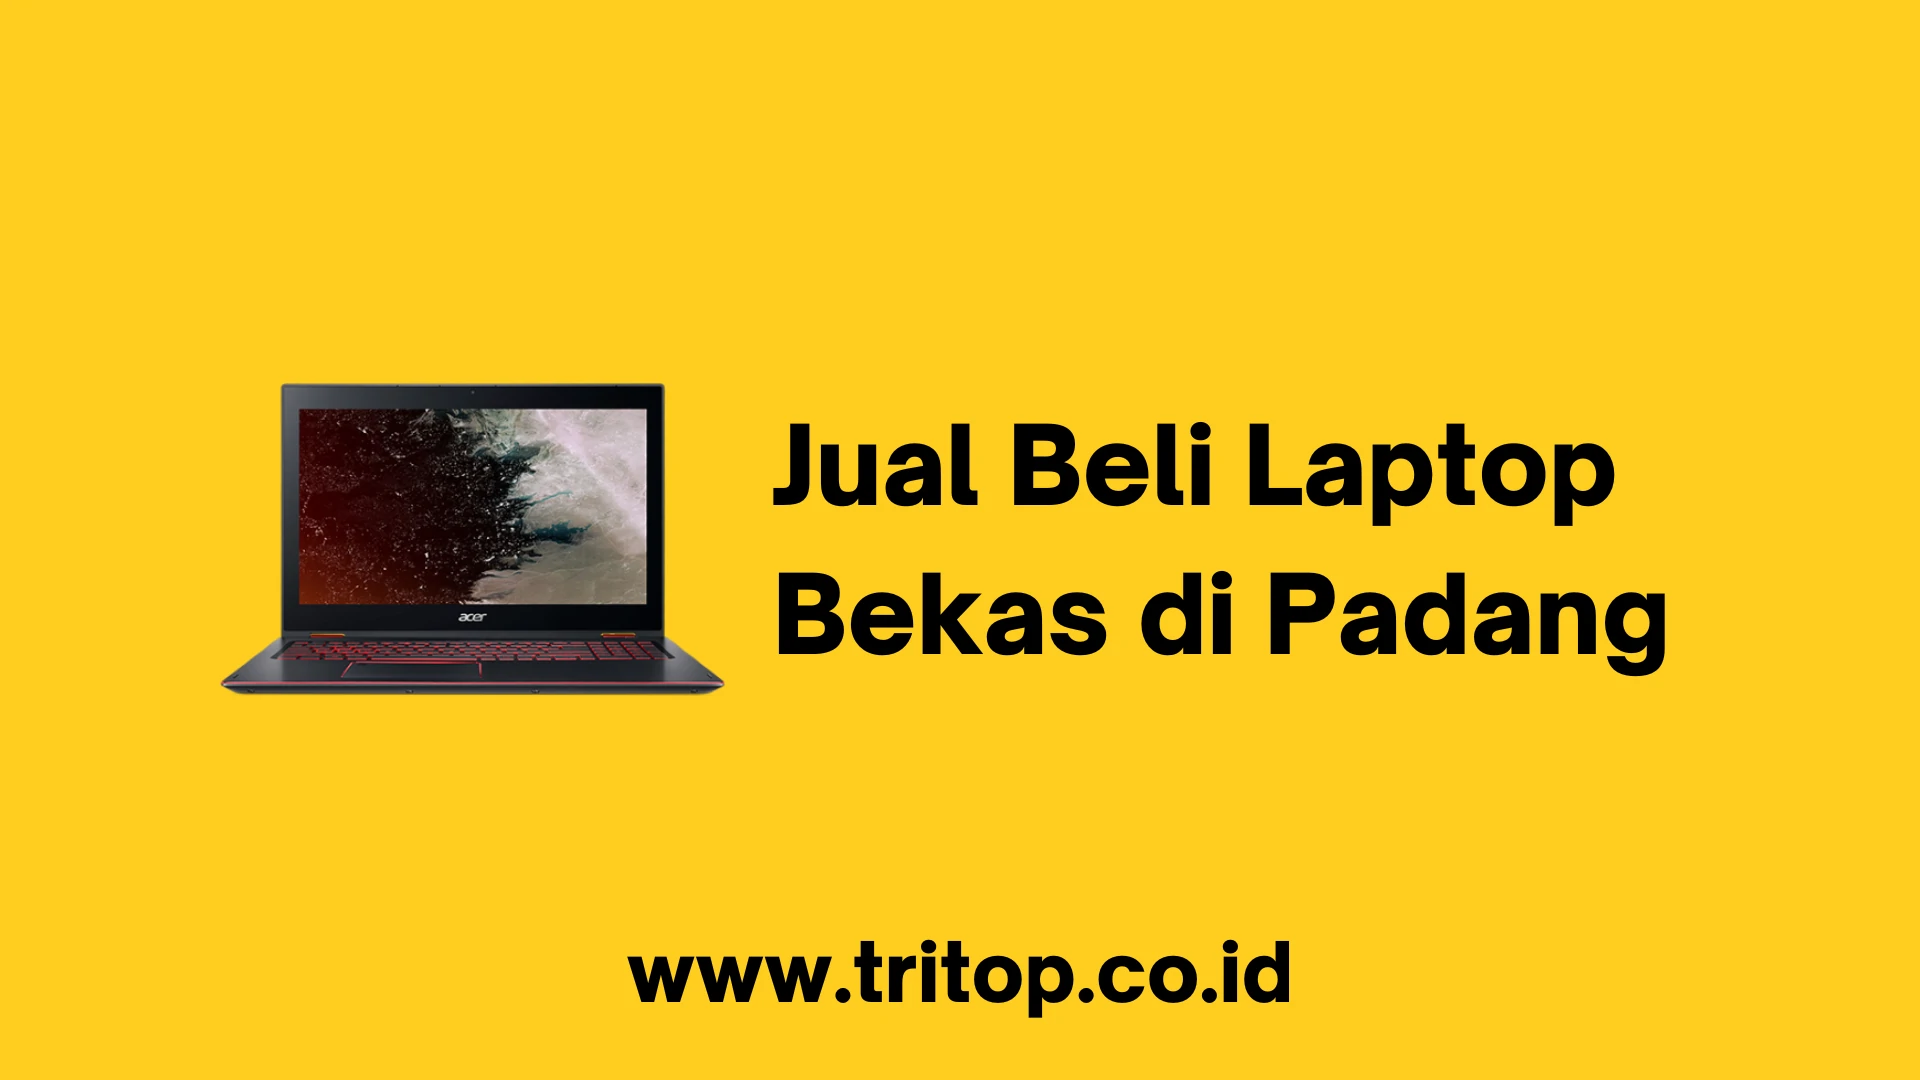 Jual Beli Laptop Bekas di Padang